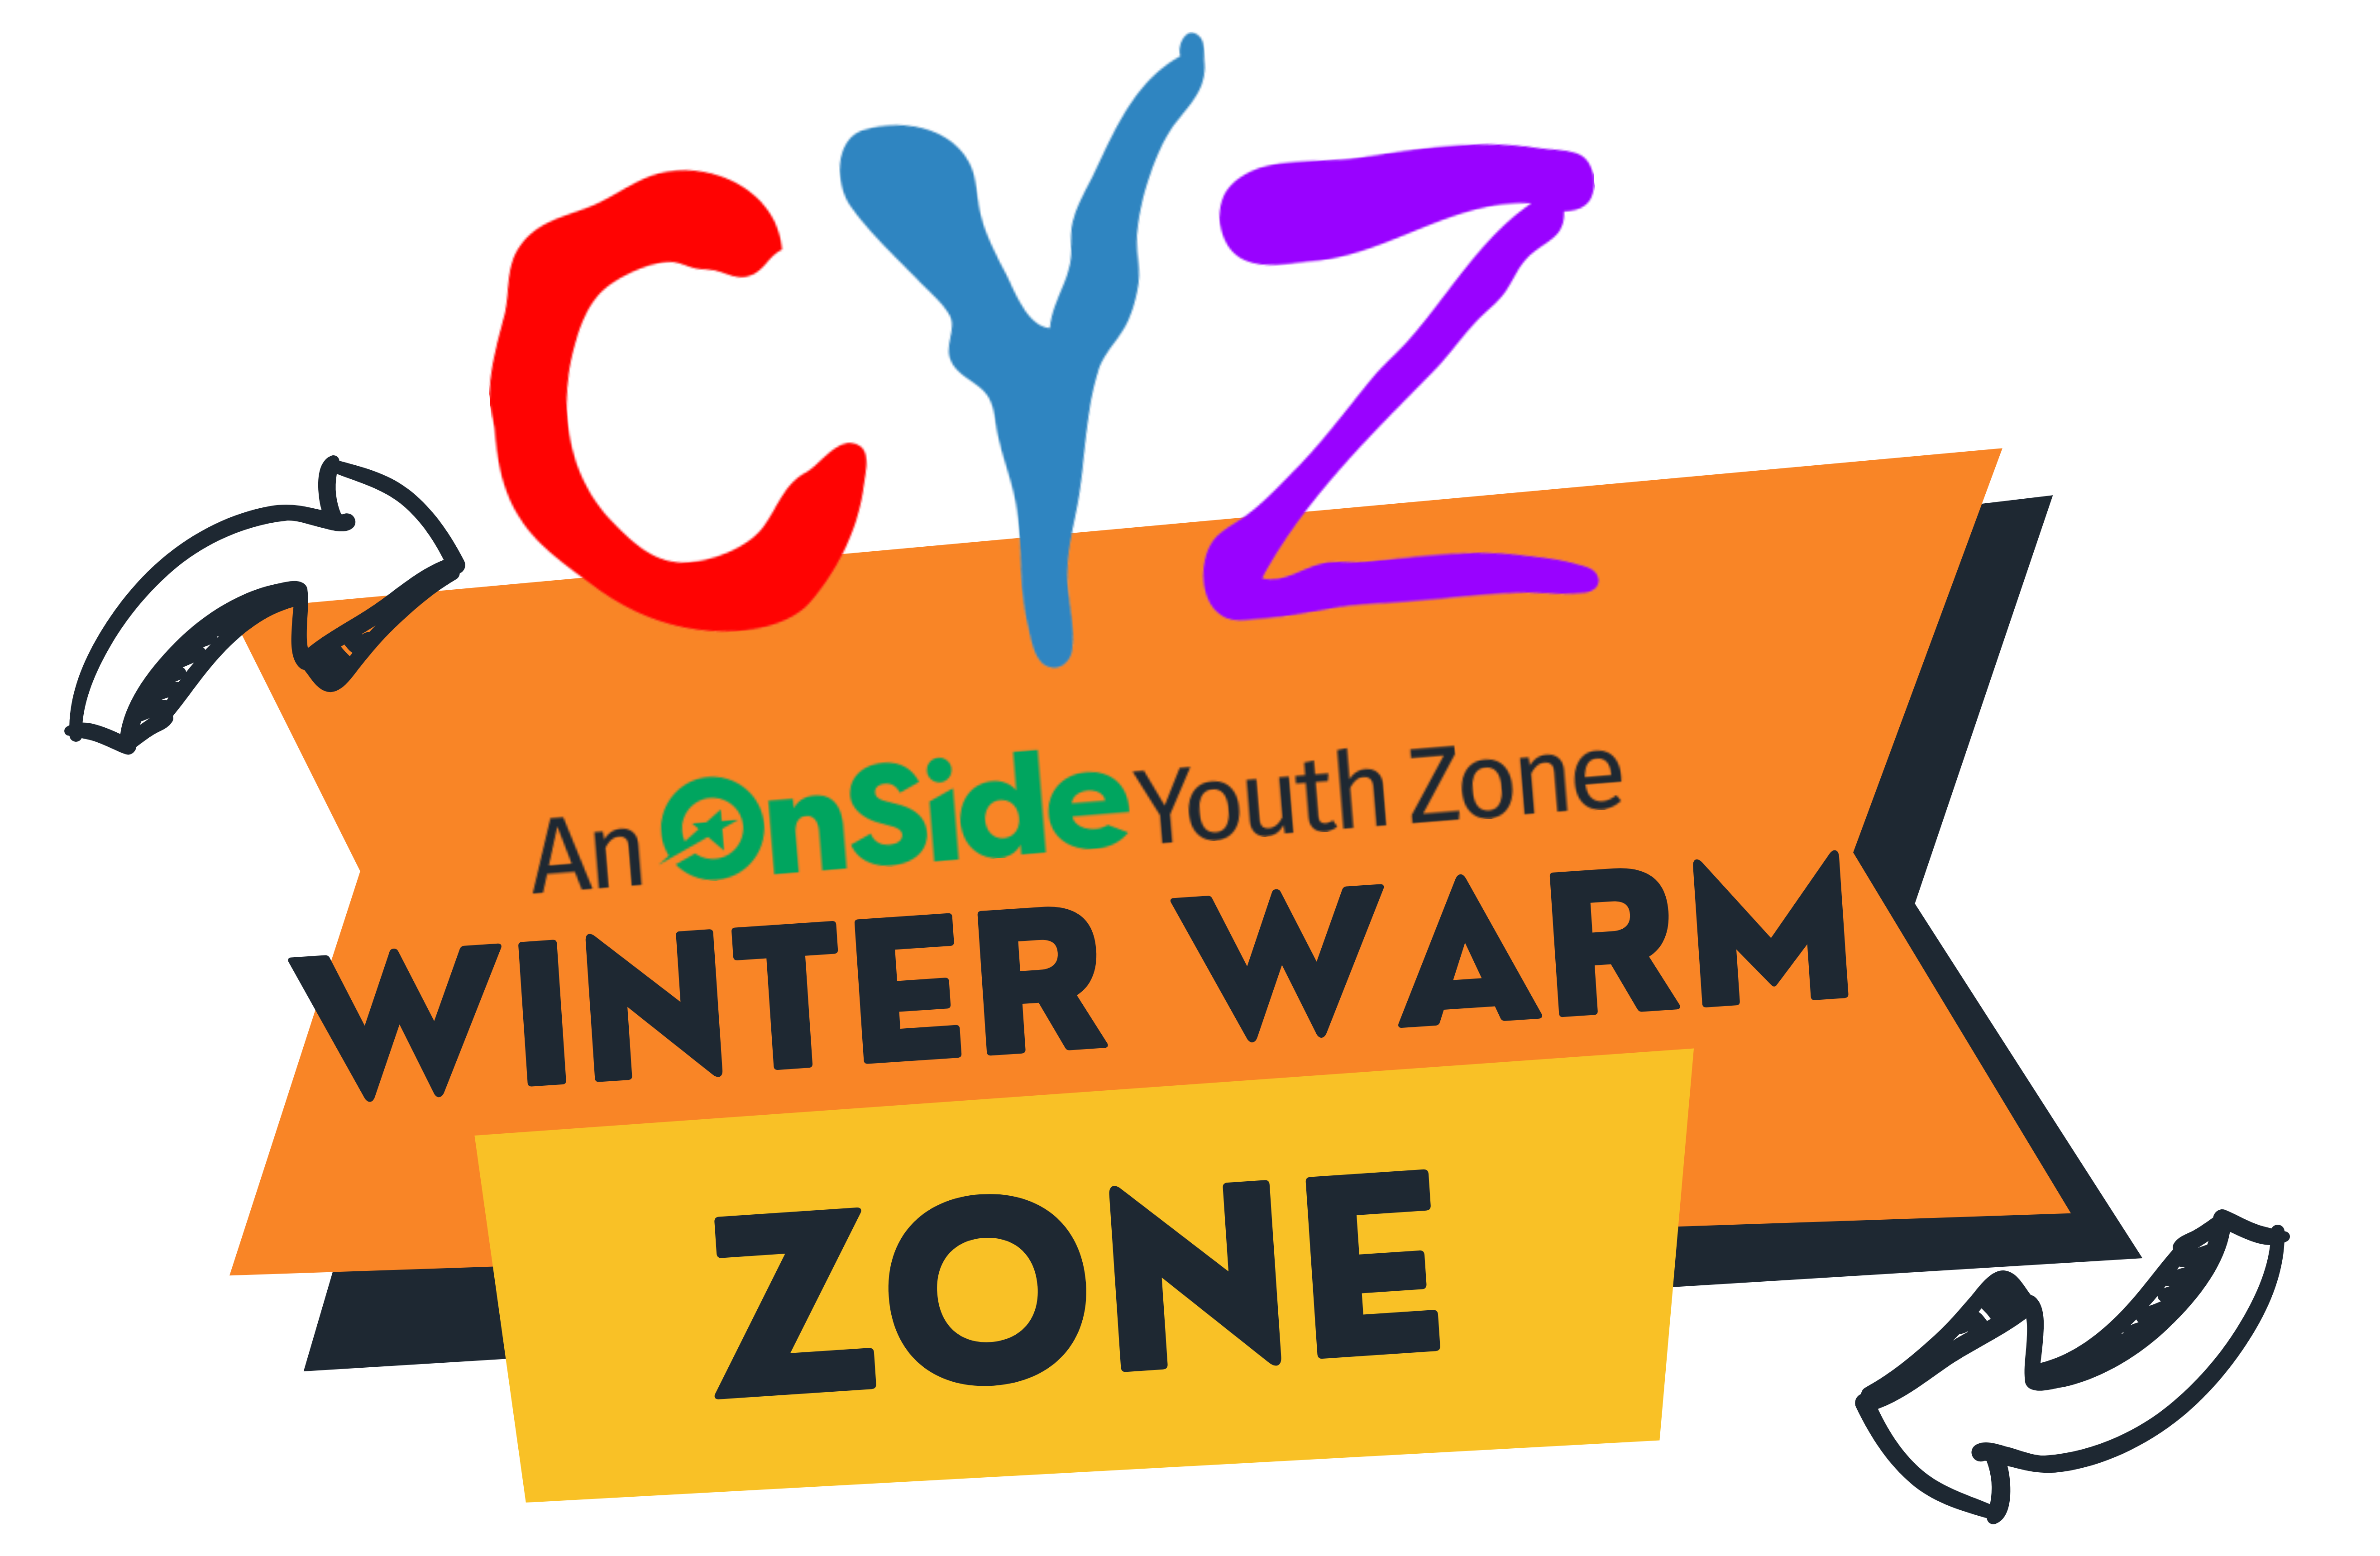 Winter Warm Zone @ CYZ